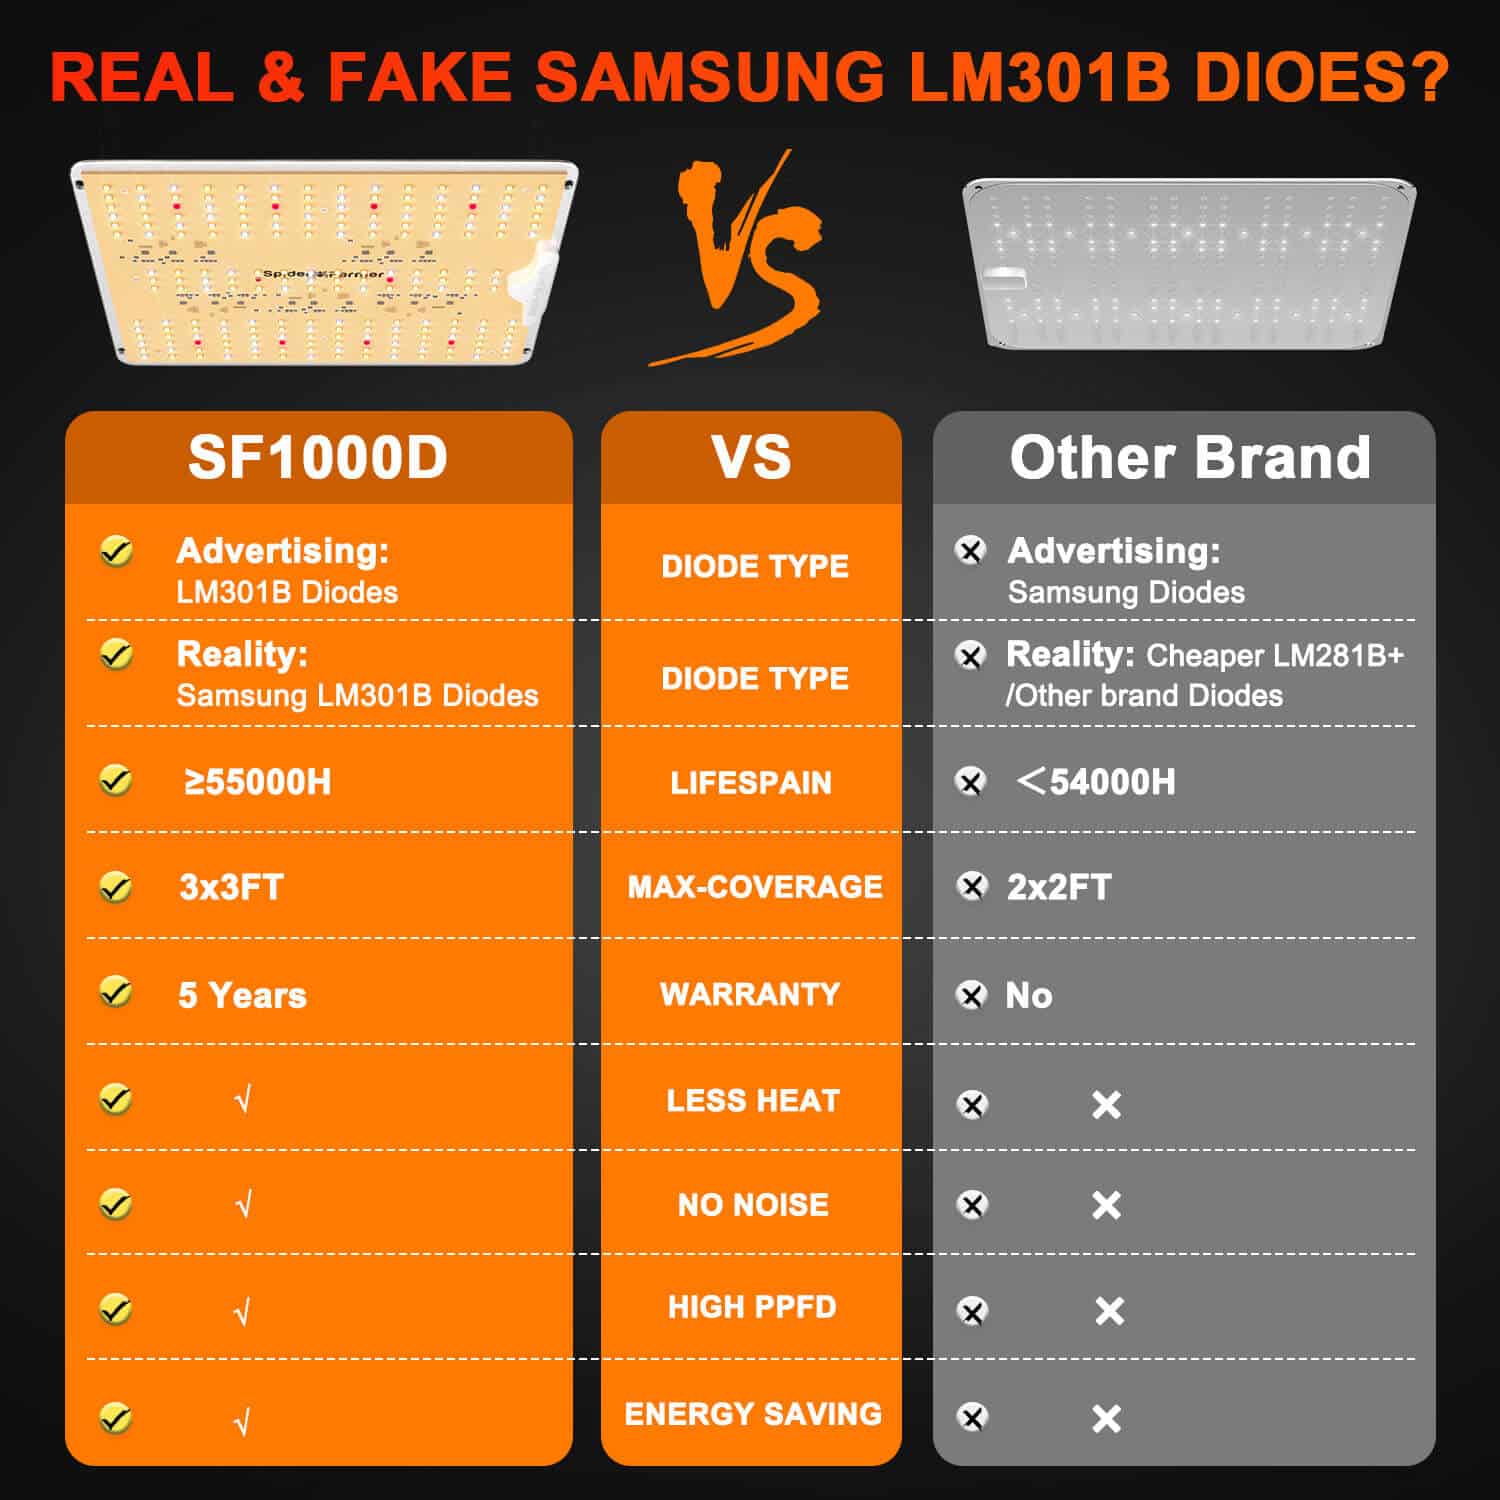 Spider Farmer® SF1000D Lumière de culture LED à spectre complet Diodes Samsung